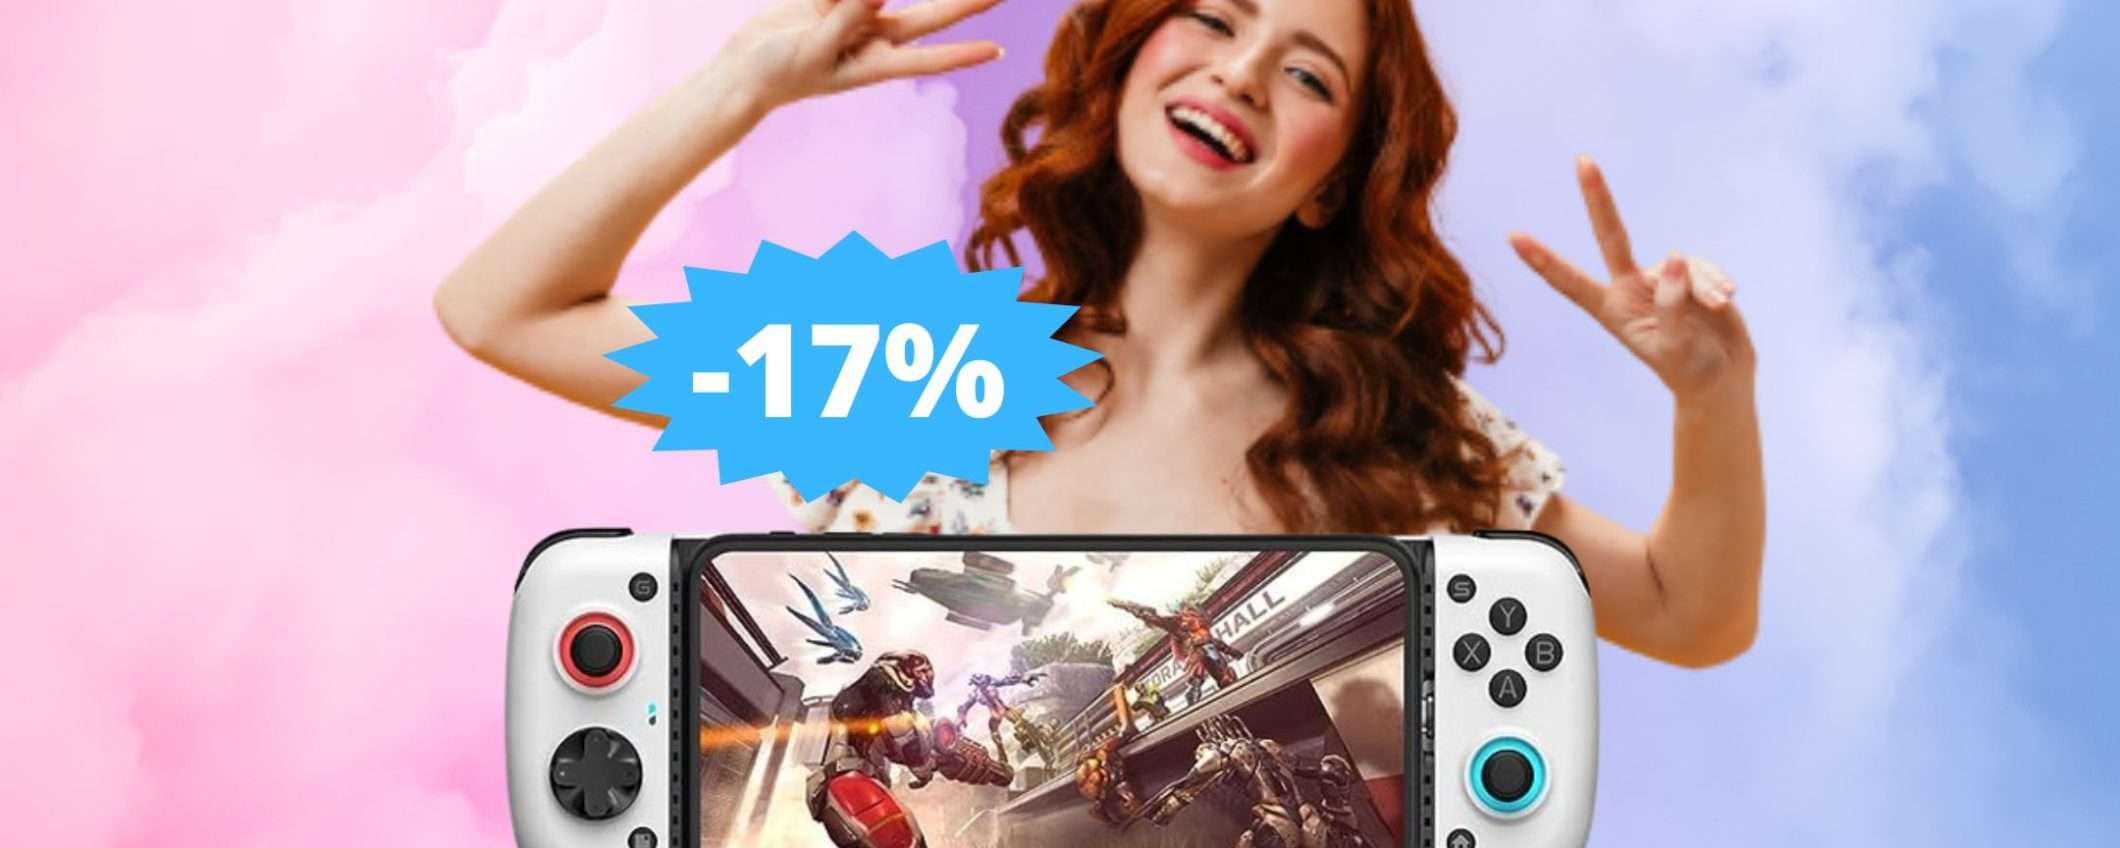 GameSir X3 Type-C: l'EVOLUZIONE del gioco per smartphone (-17%)